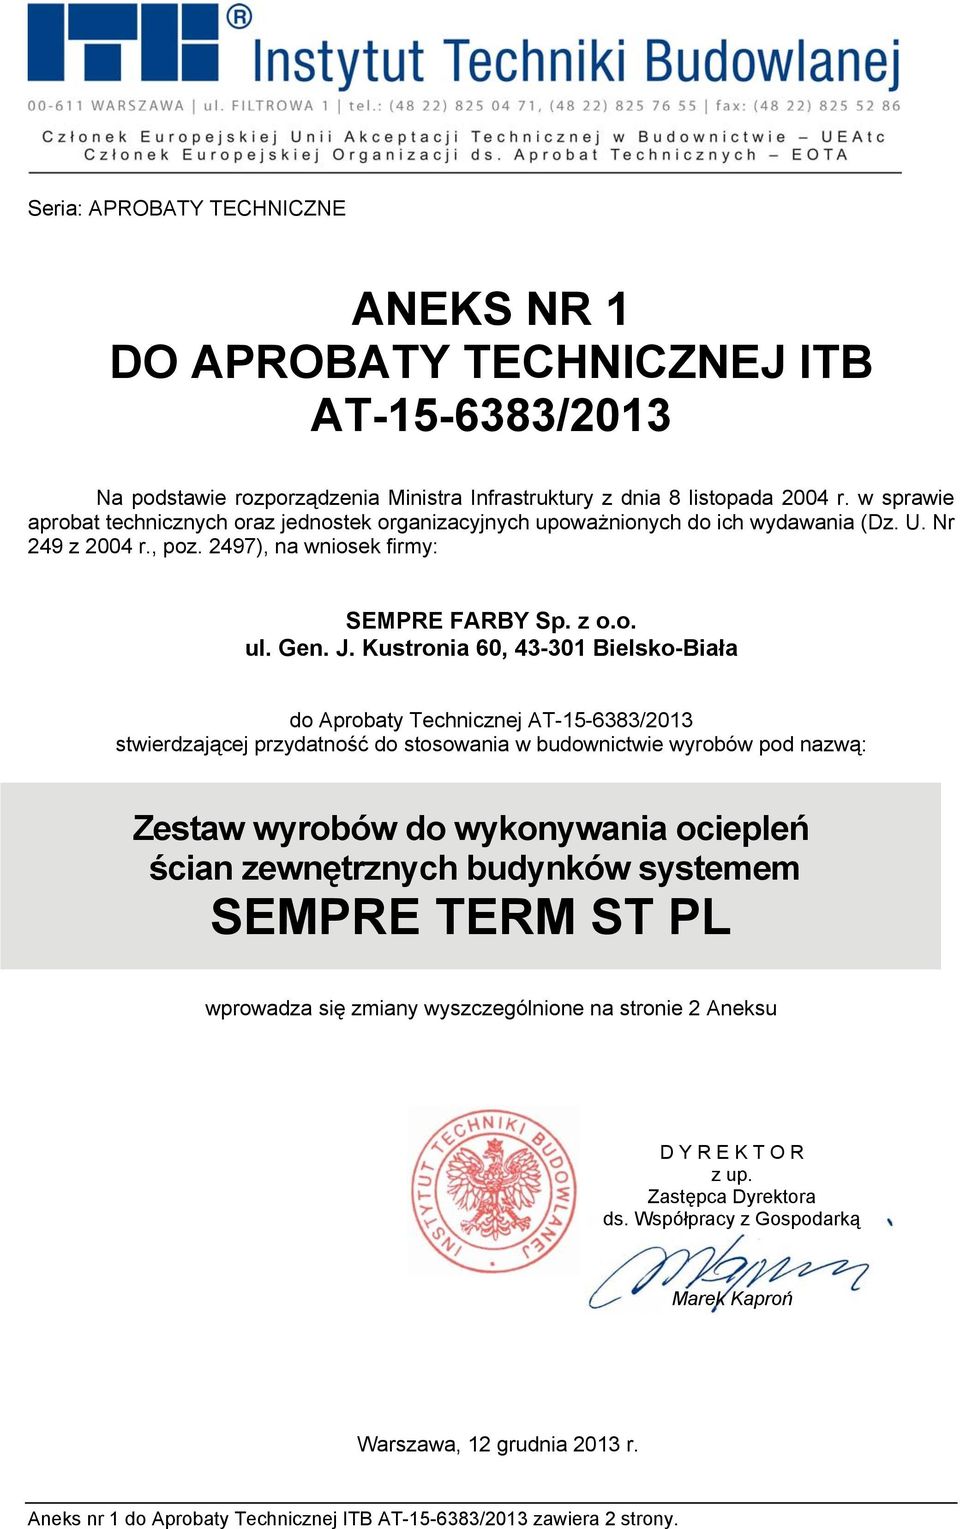 Kustronia 60, 43-301 Bielsko-Biała do Aprobaty Technicznej AT-15-6383/2013 stwierdzającej przydatność do stosowania w budownictwie wyrobów pod nazwą: Zestaw wyrobów do wykonywania ociepleń ścian